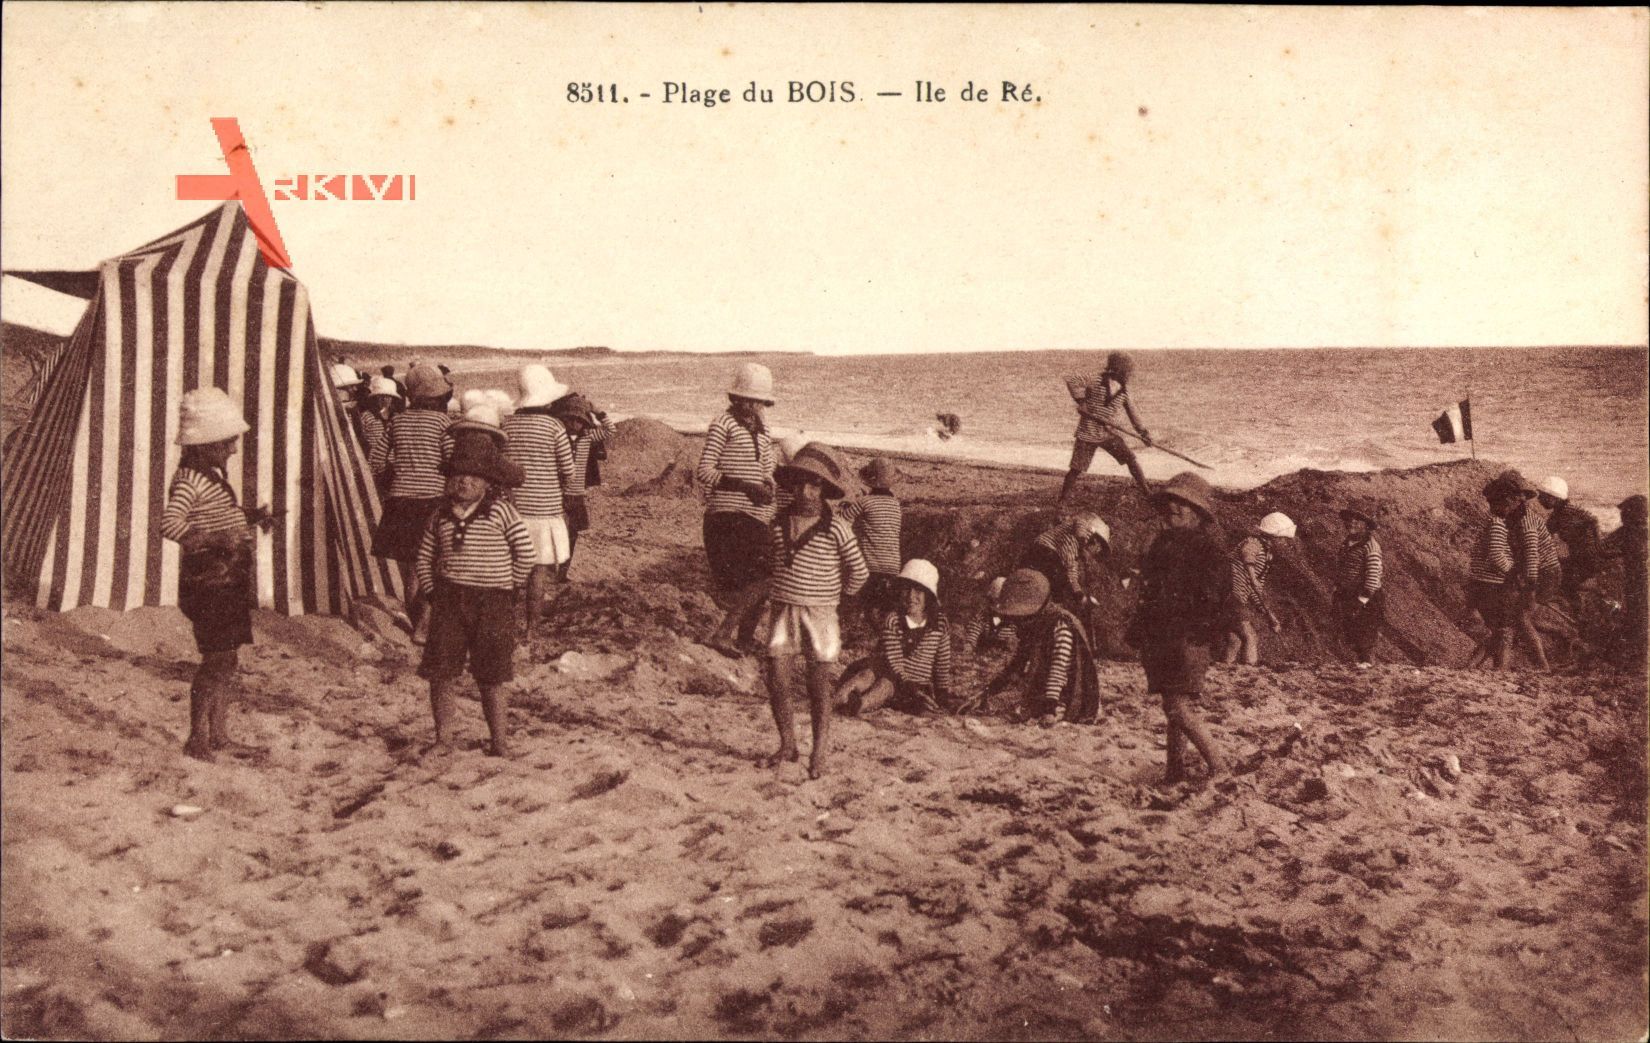 Plage du Bois, Ile de Re, Kinder in Badekleidung am Strand, Strandzelt